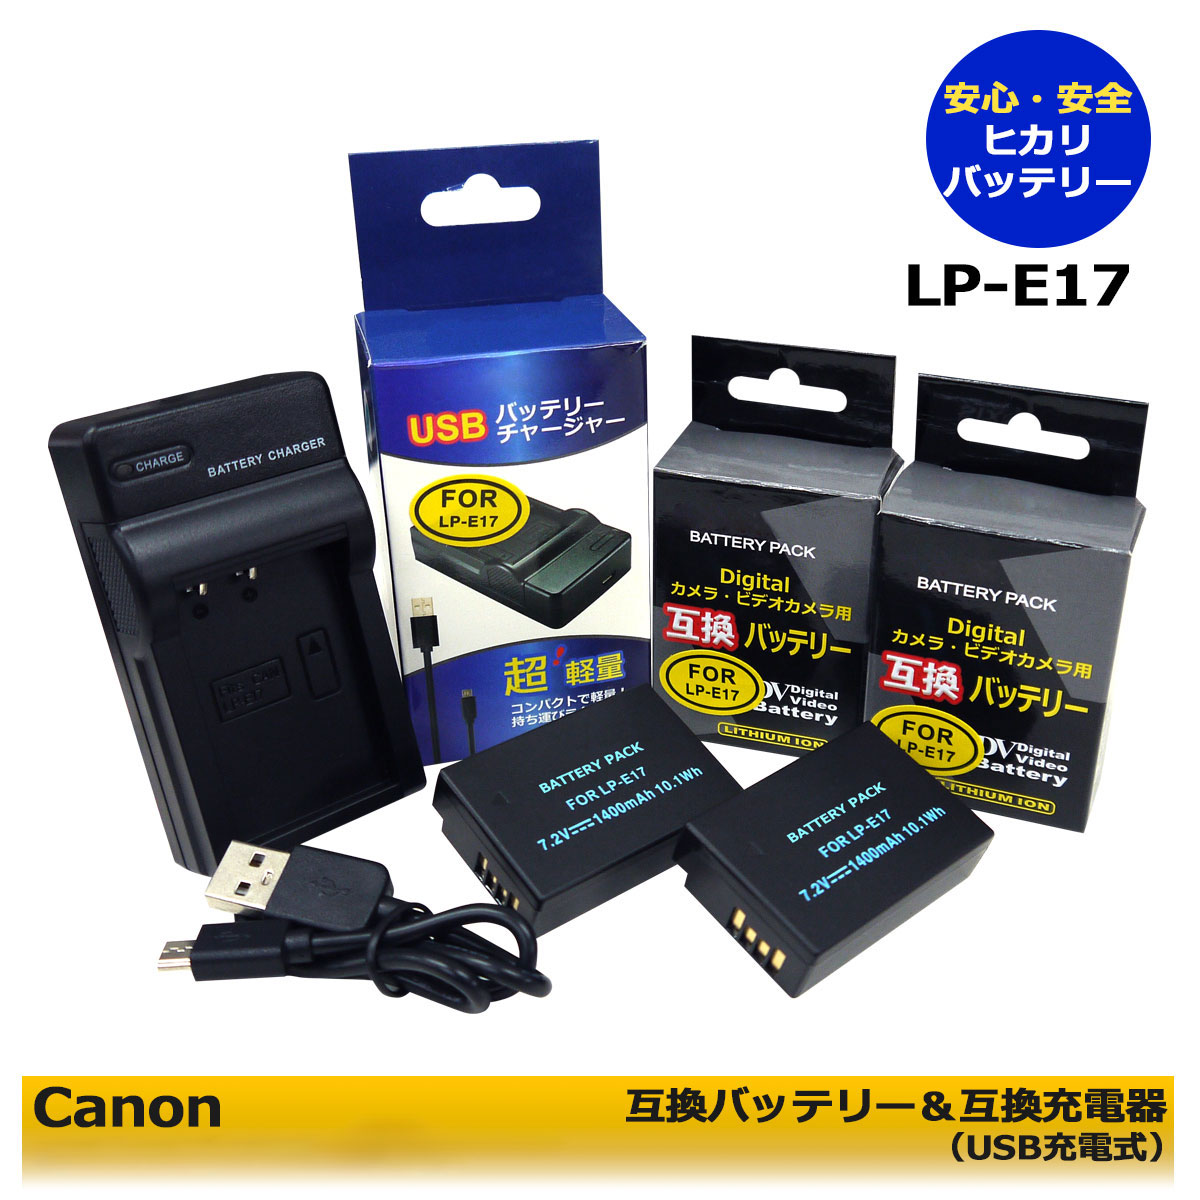 キヤノン LP-E10 Micro USB付き 互換品